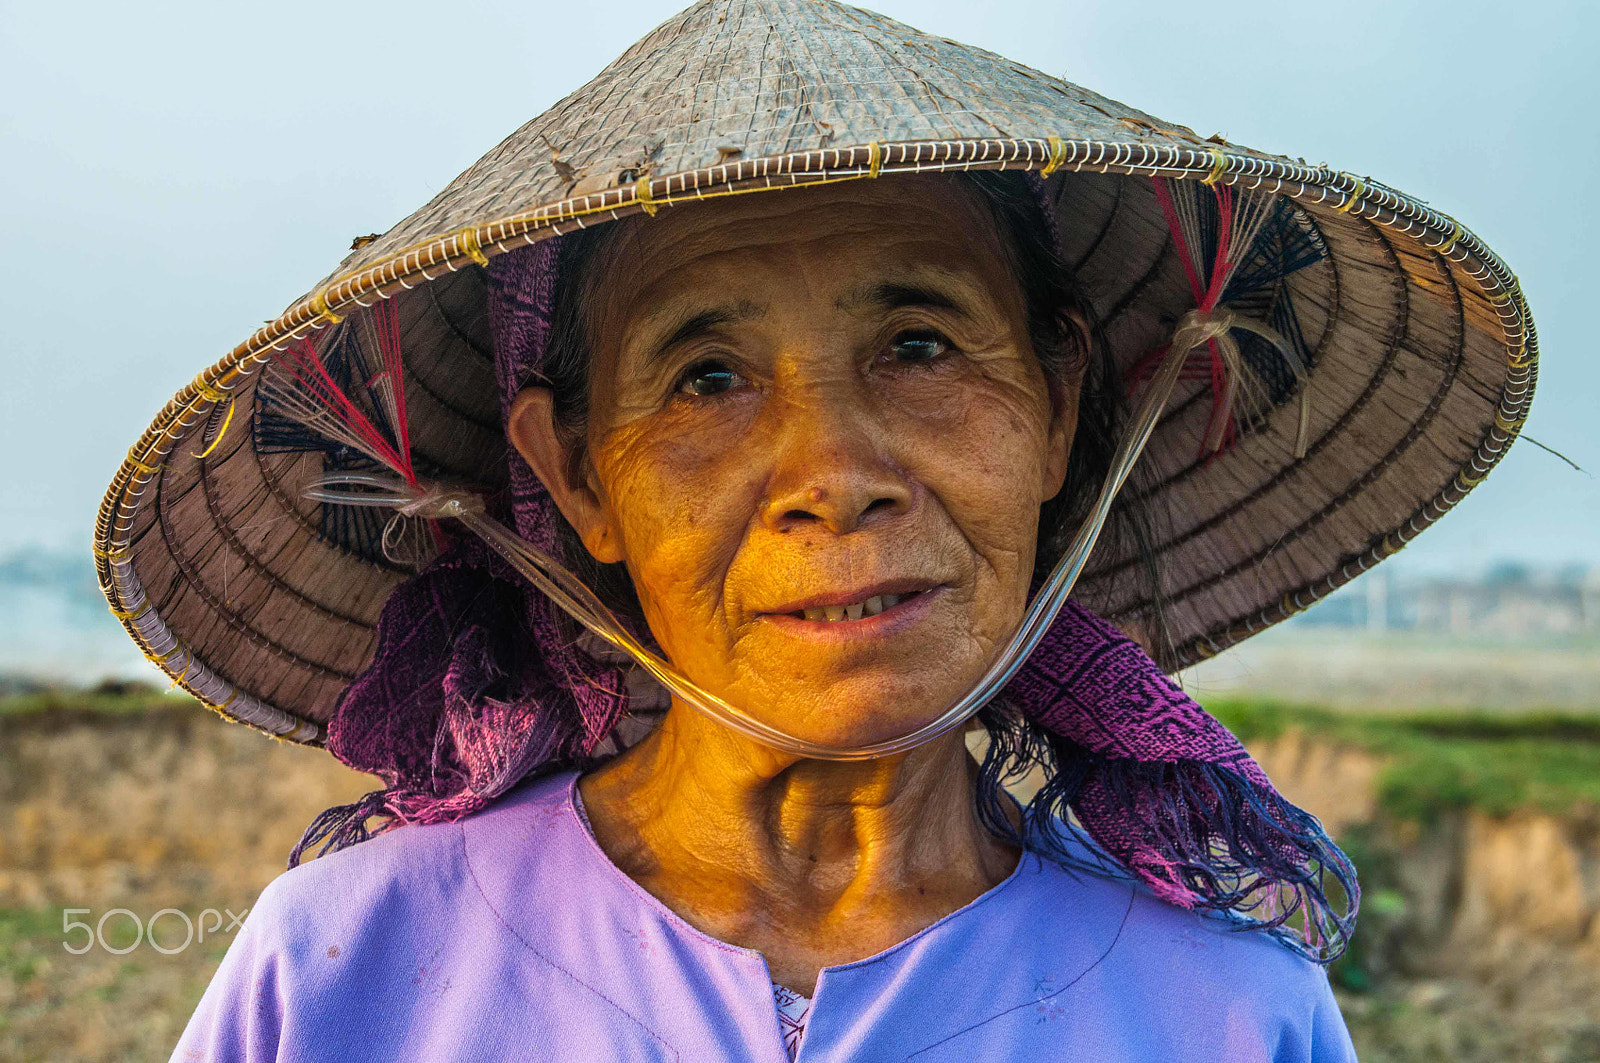 Nikon D90 sample photo. A vietnamese farmer photography